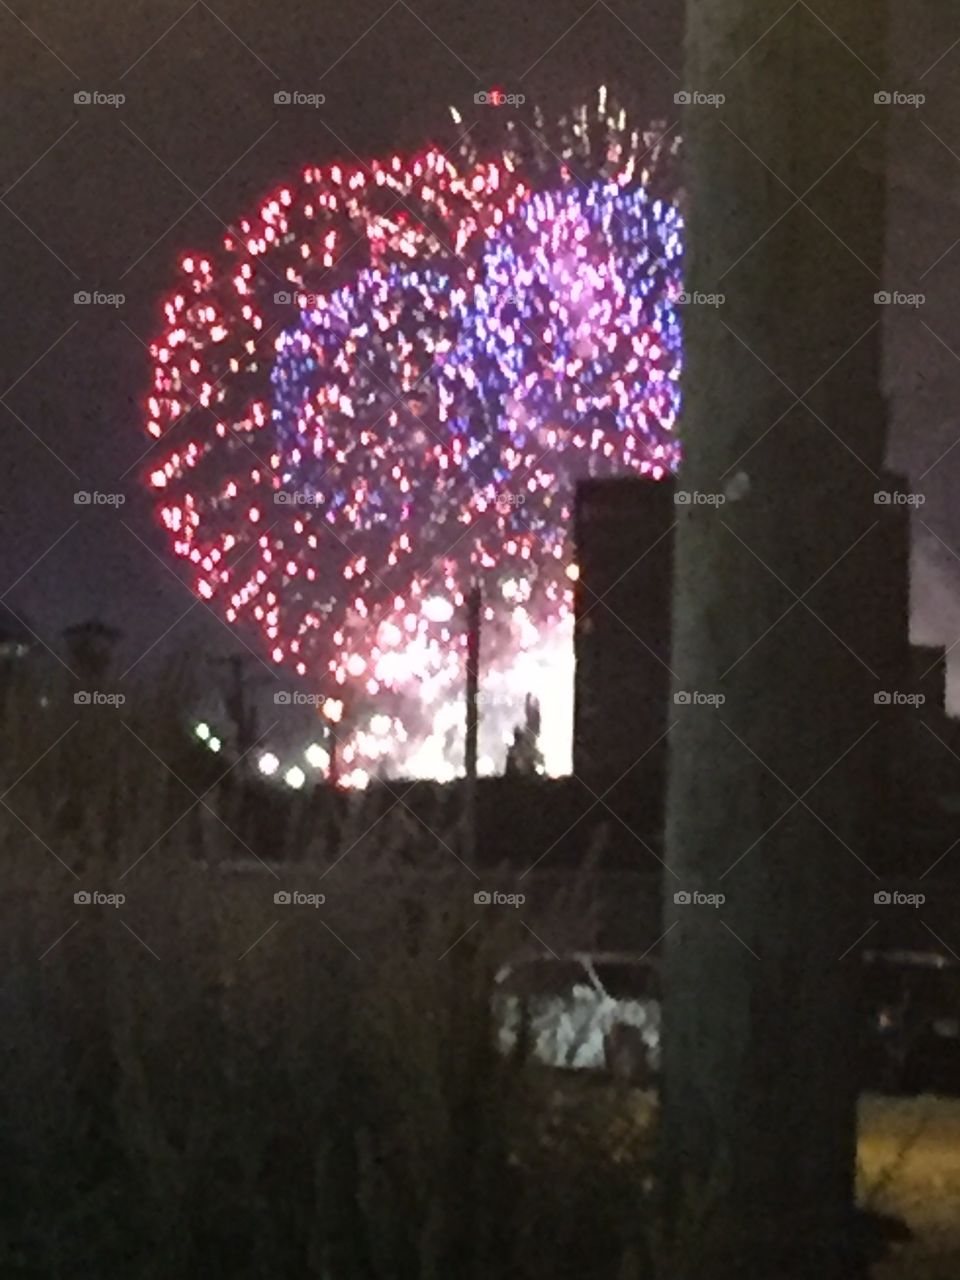 Detroit fireworks